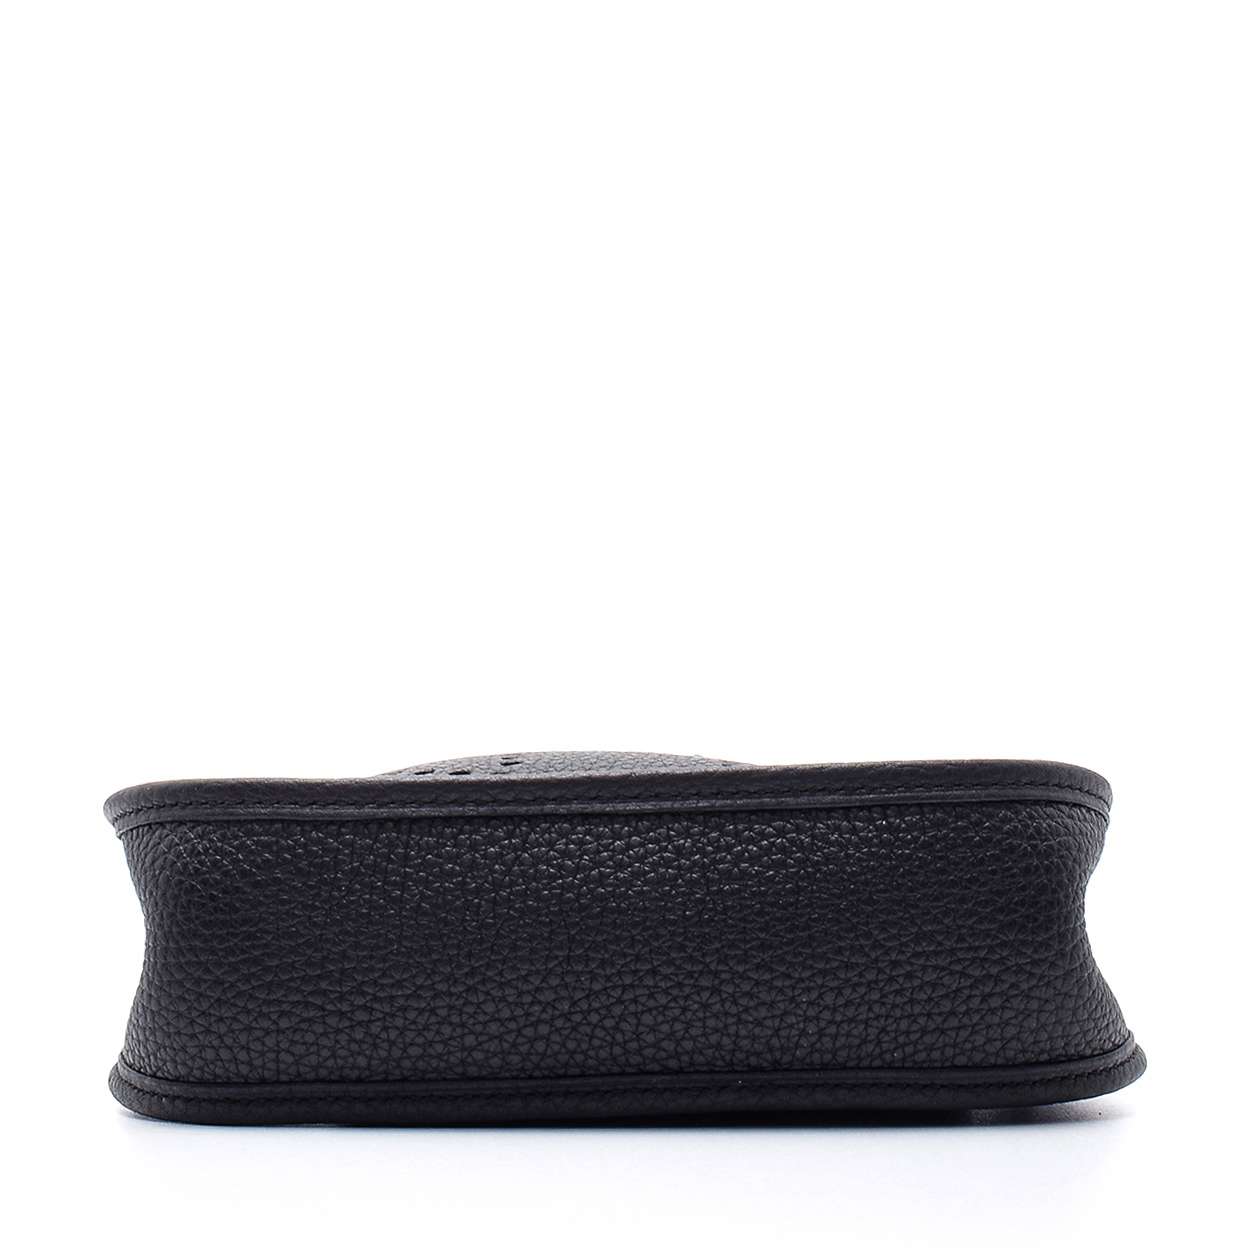 Hermes - Black Clemence Leather Mini Evelyne Bag